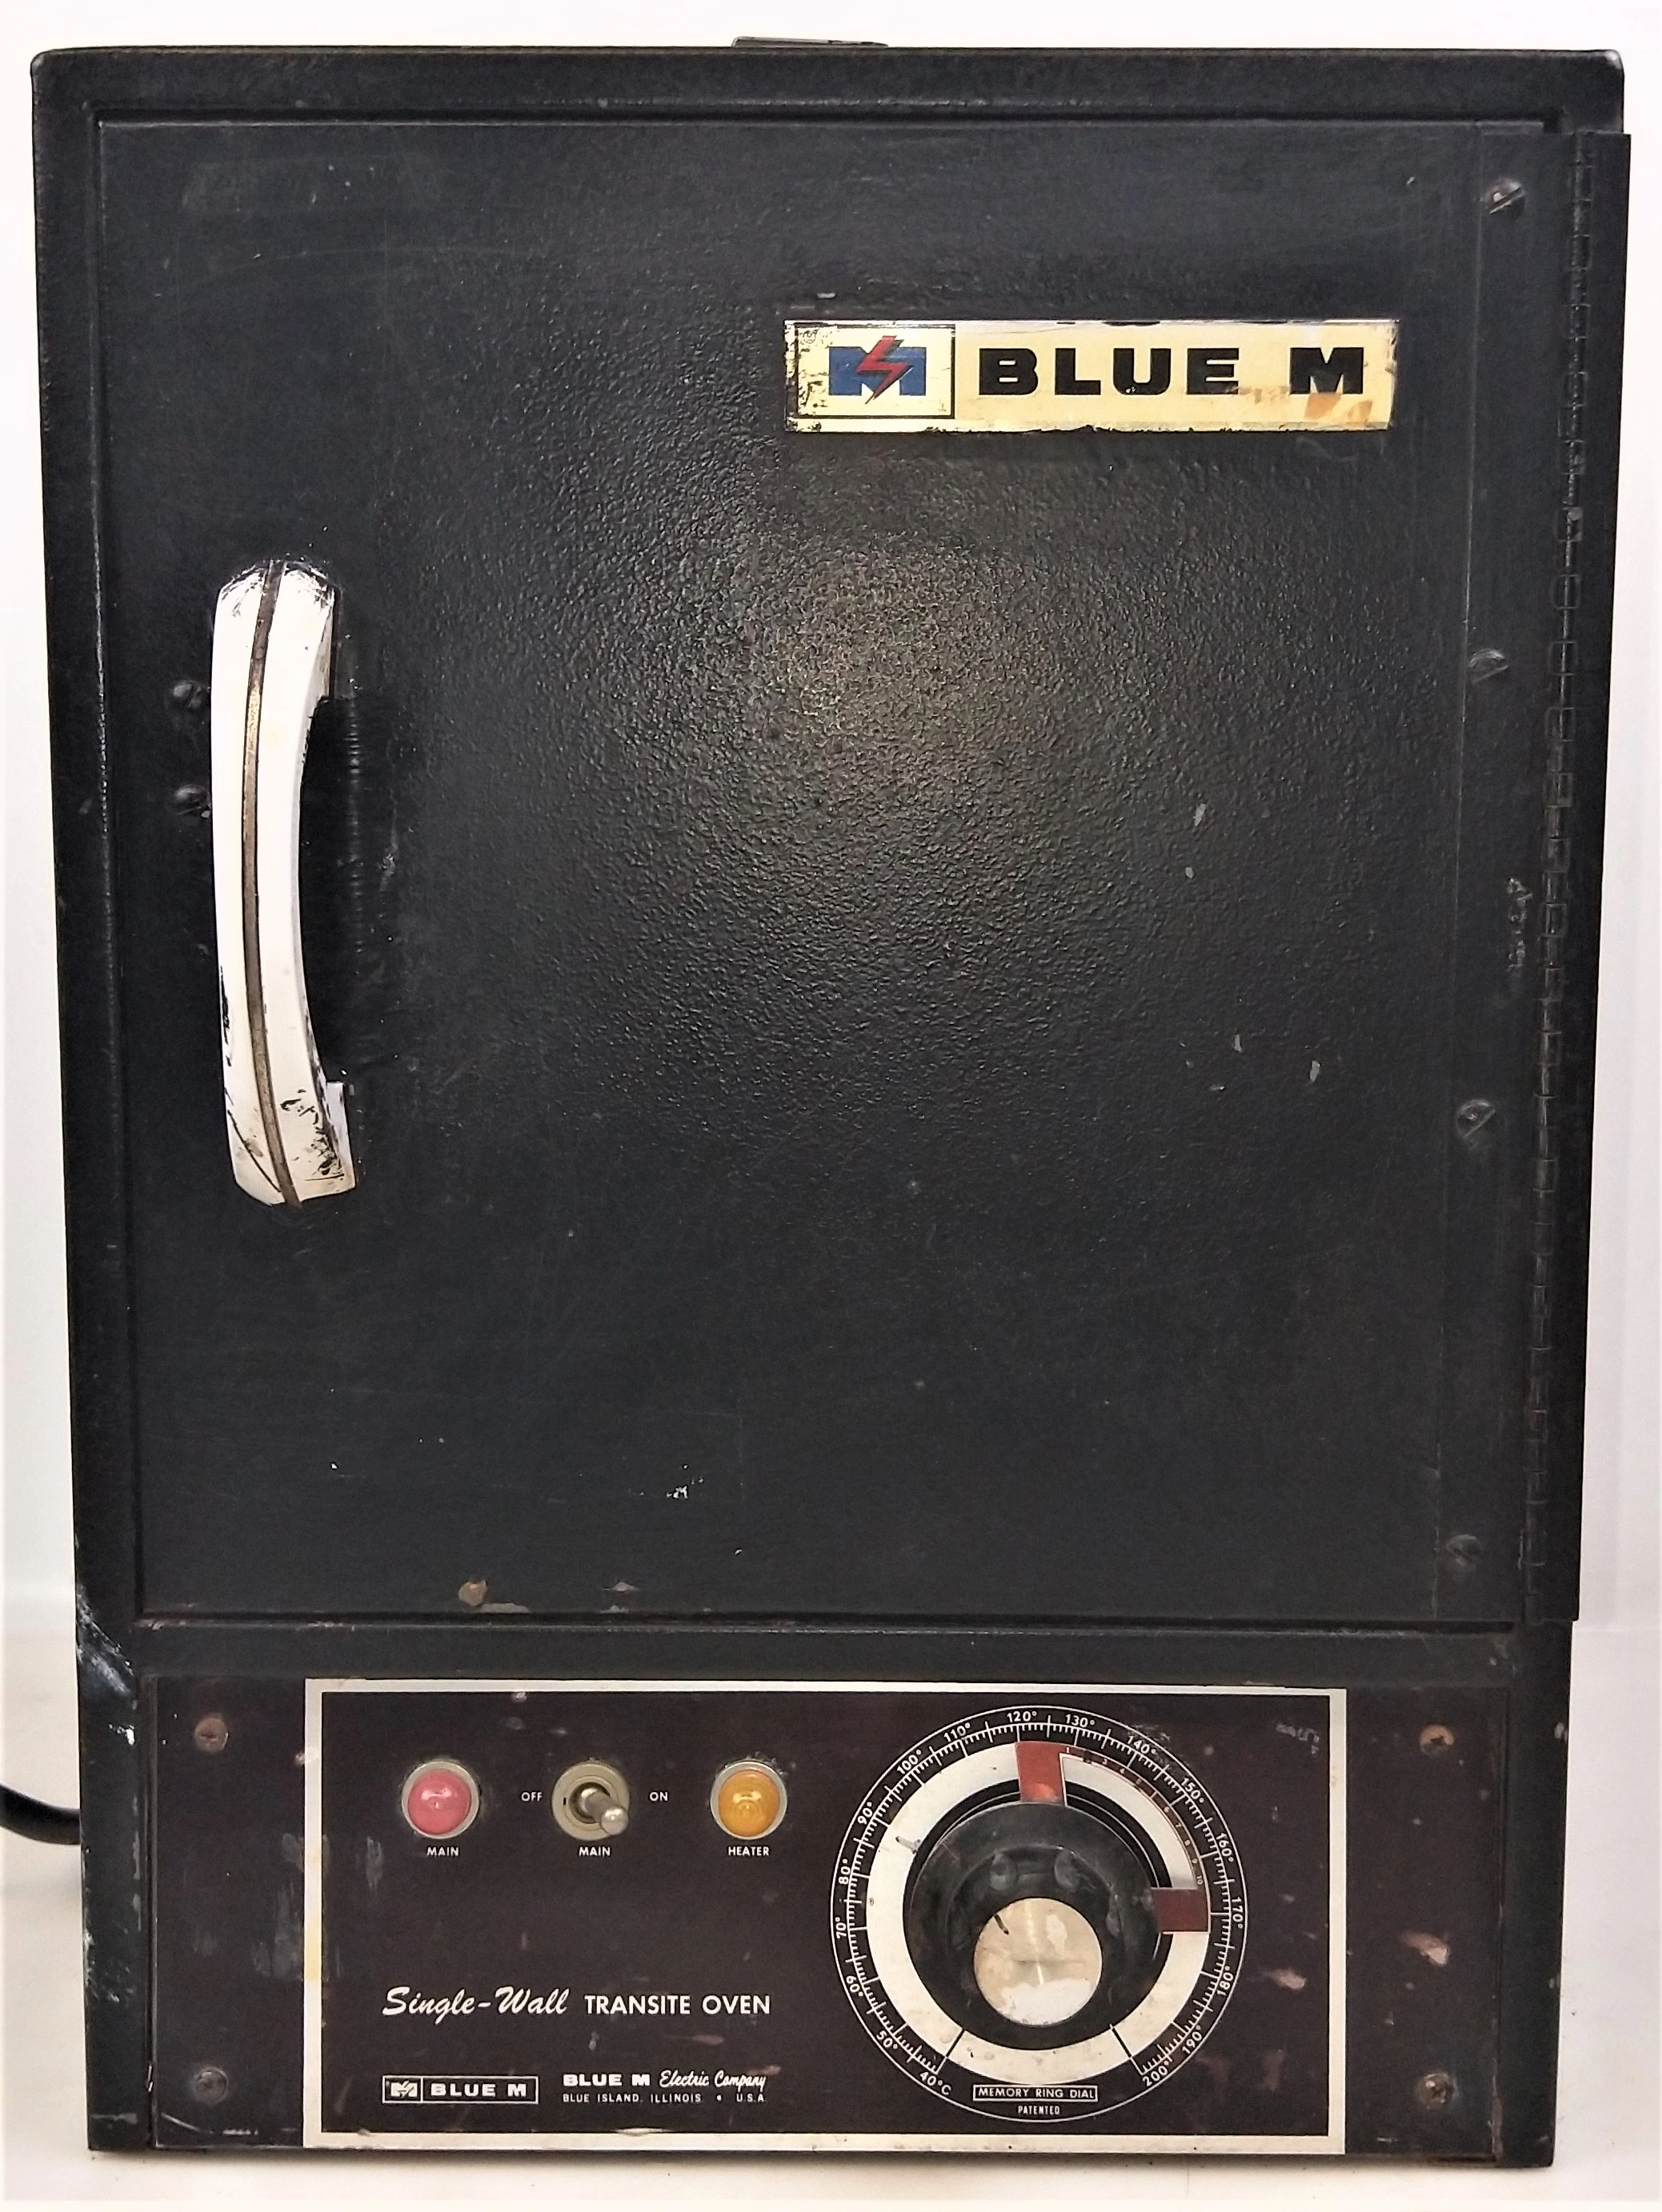 Blue-M SW-11TA Transite Oven - 0.05 Cu-Ft